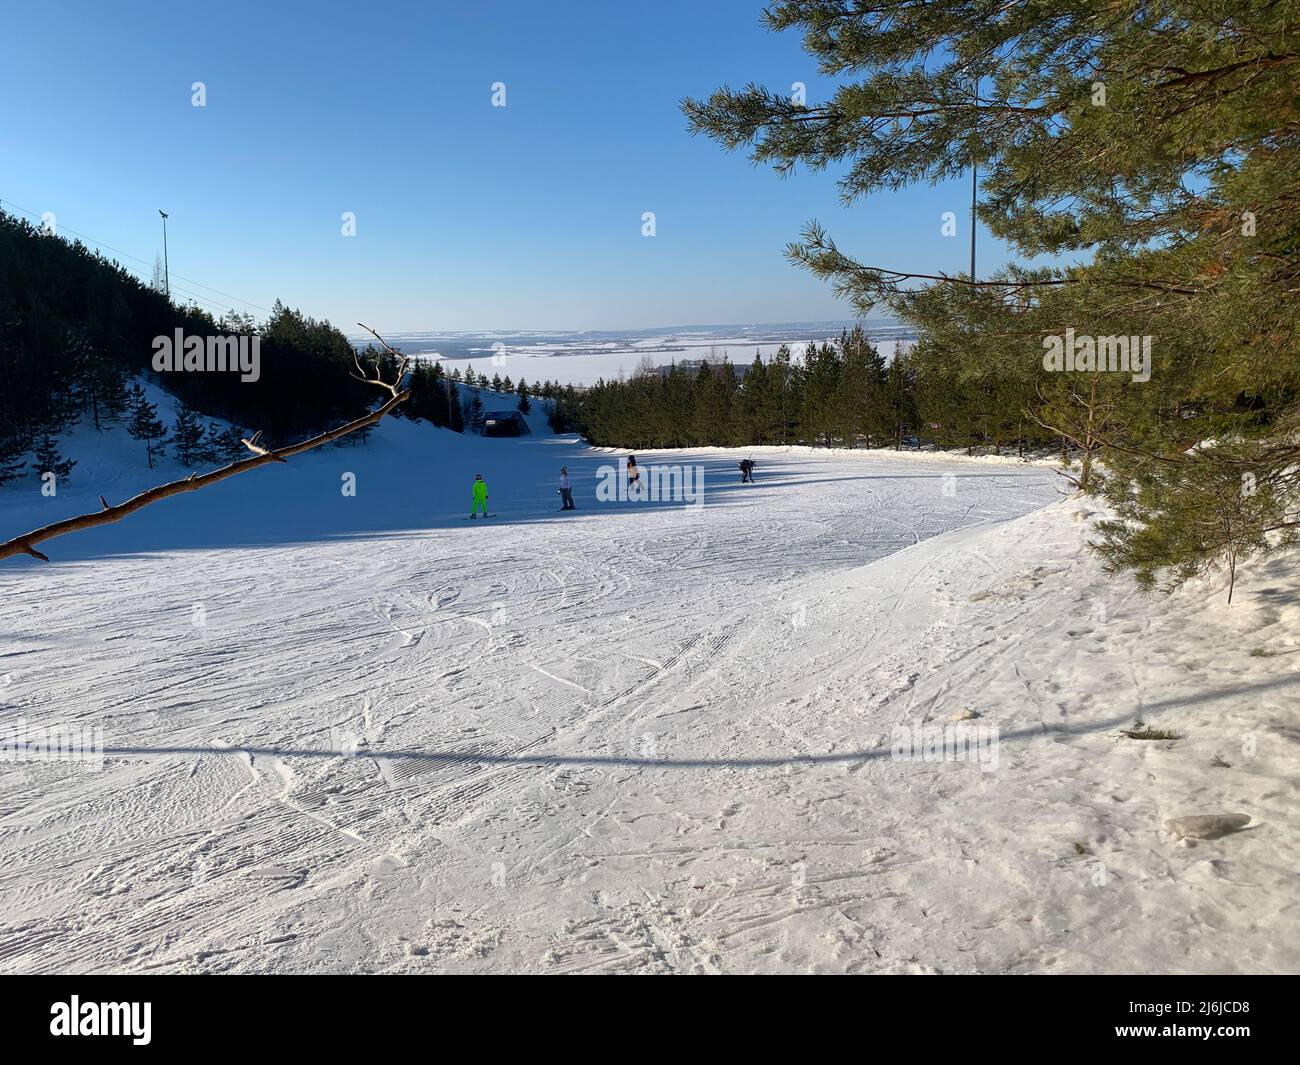 Station de ski en hiver. Jour ensoleillé Banque D'Images